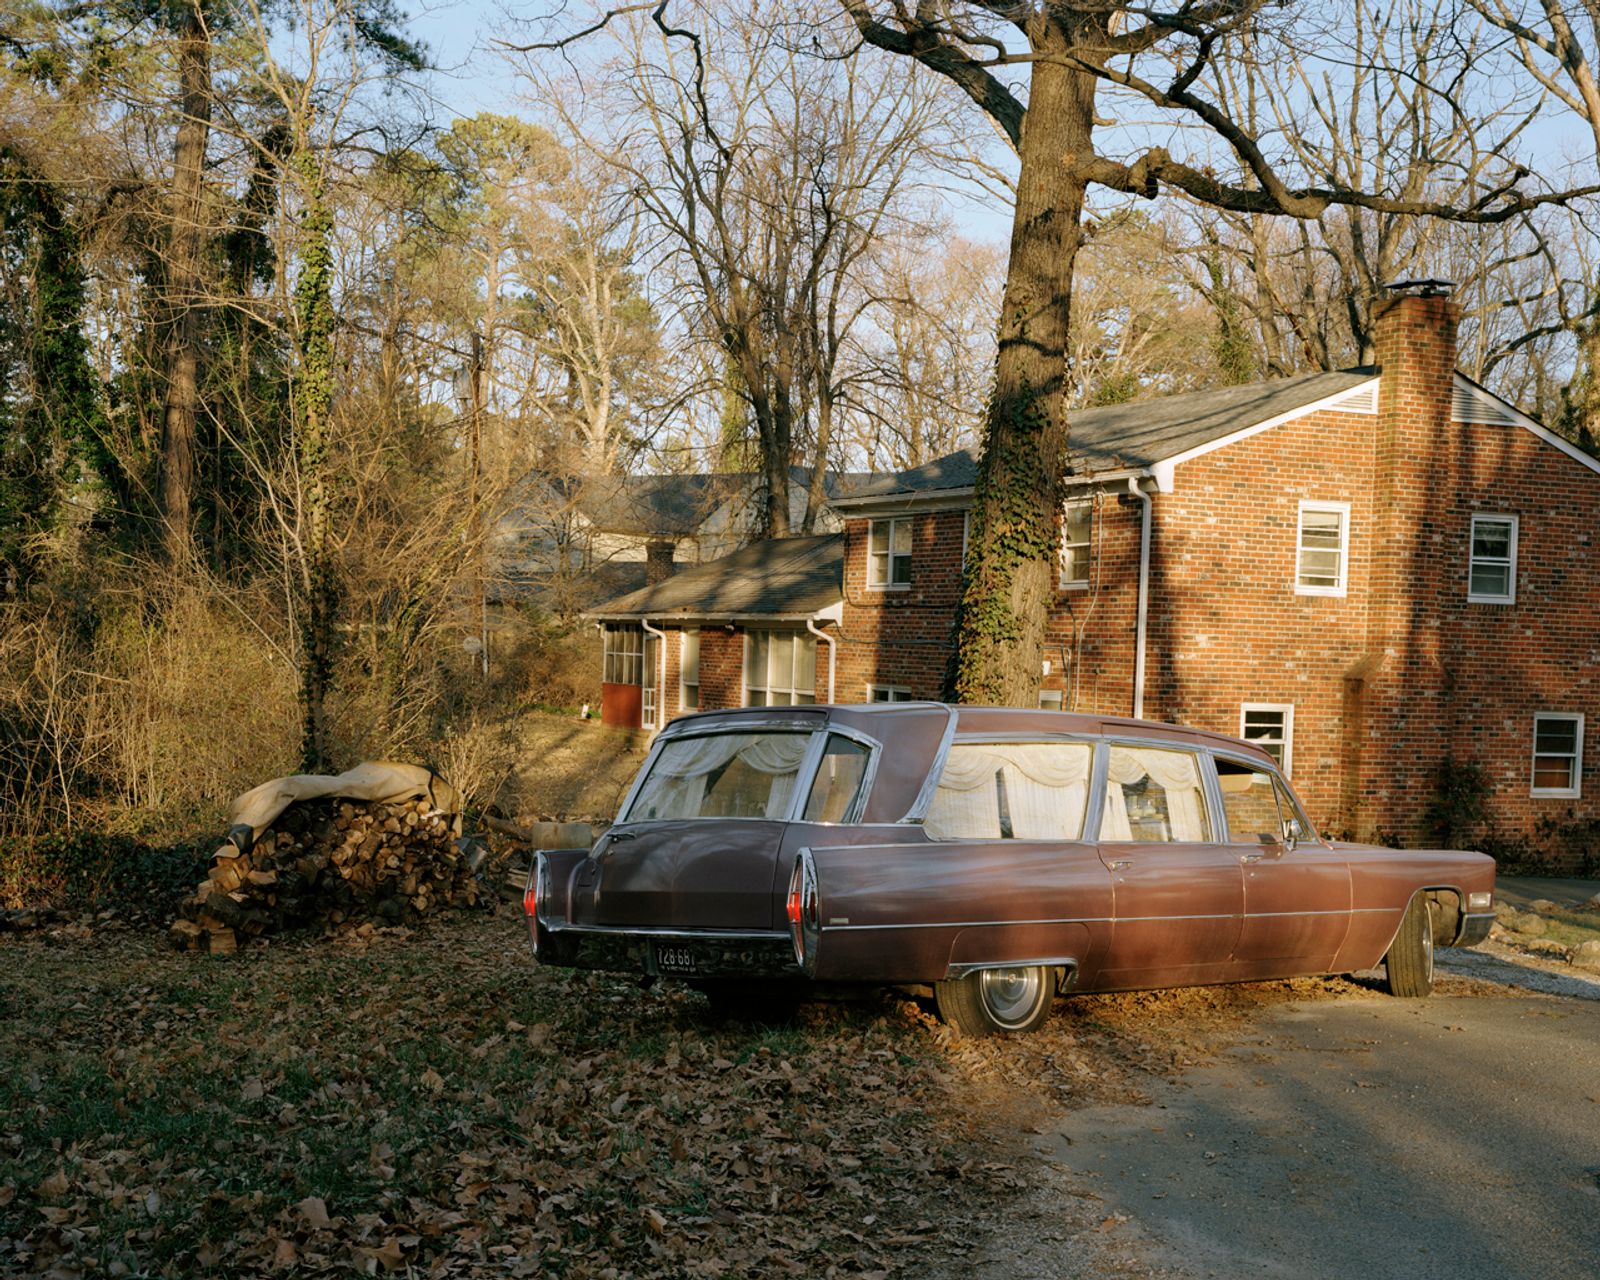 © Susan Worsham - " Hearse in my Childhood Driveway"